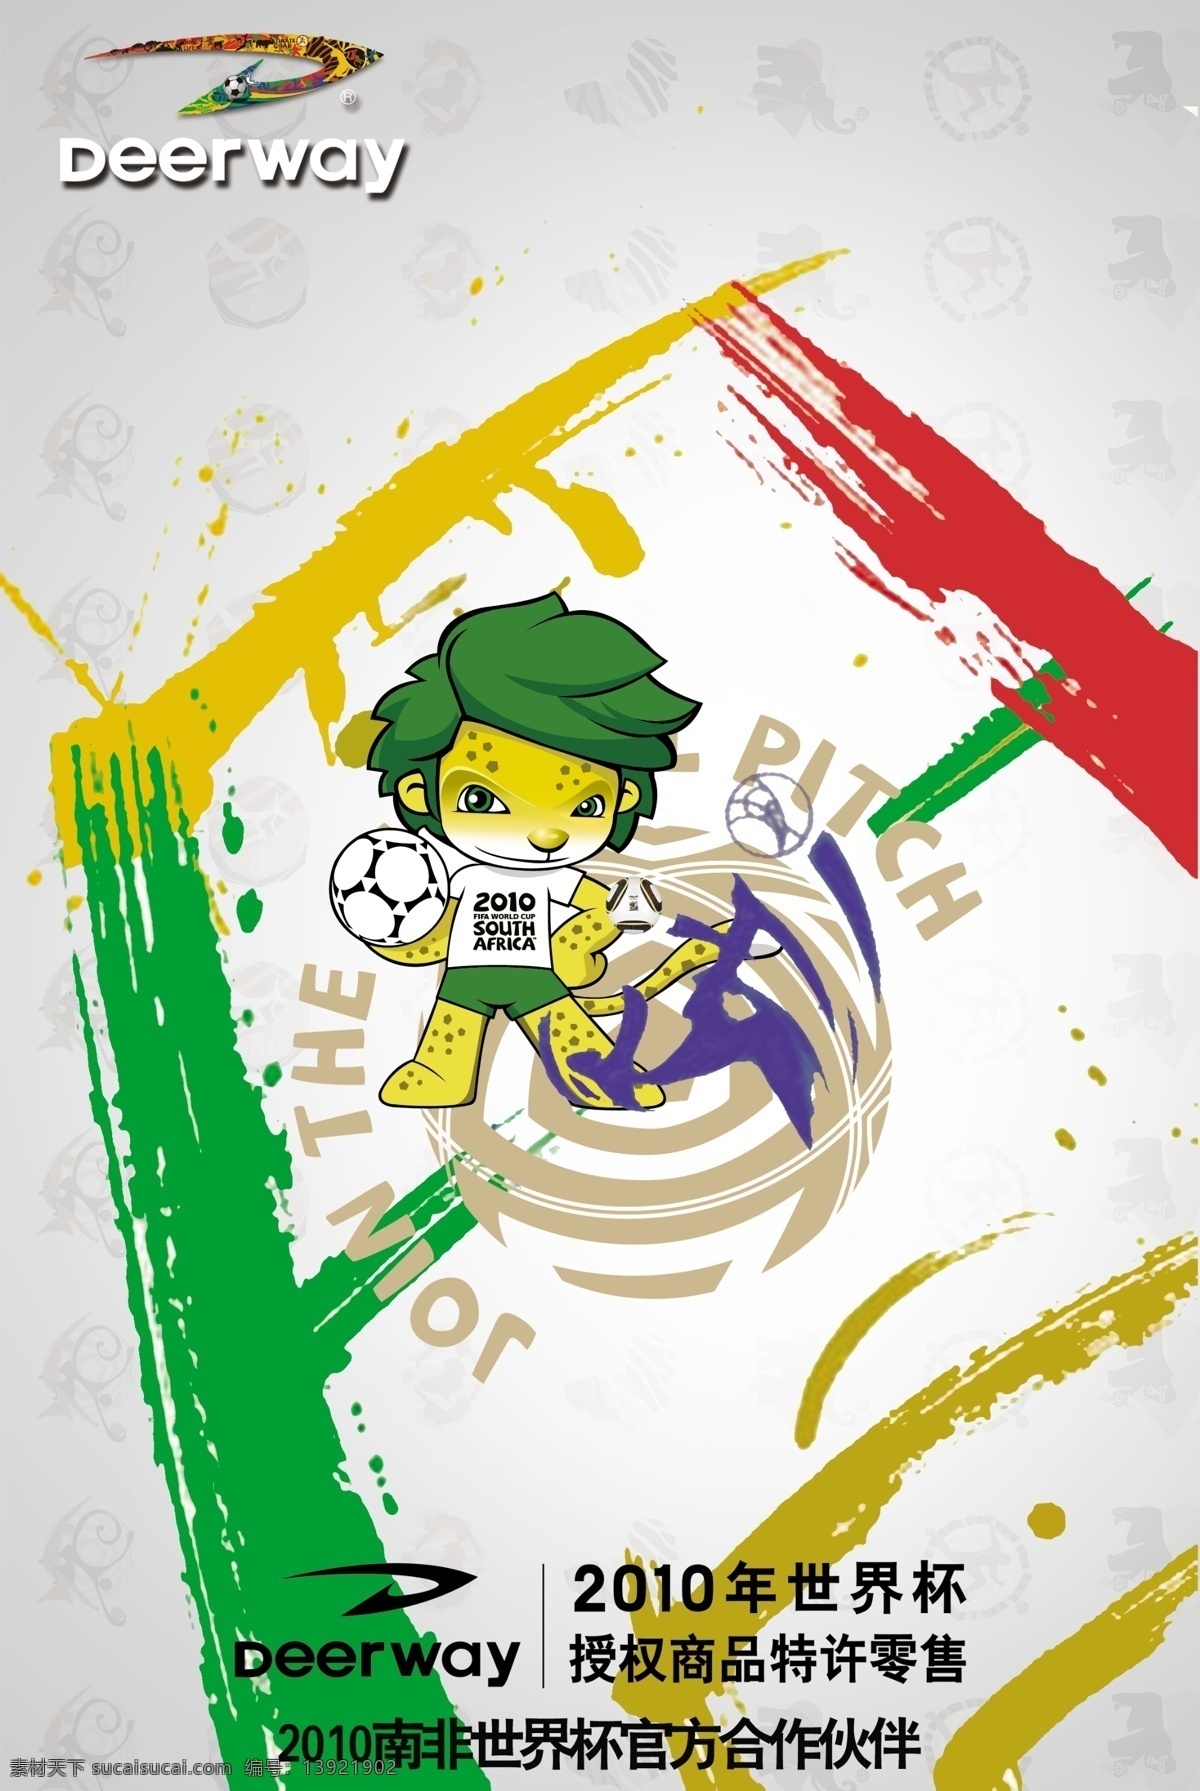 广告设计模板 世界杯 世界杯海报 世界杯吉祥物 源文件 足球 海报 模板下载 德尔惠 扎库米 矢量图 日常生活